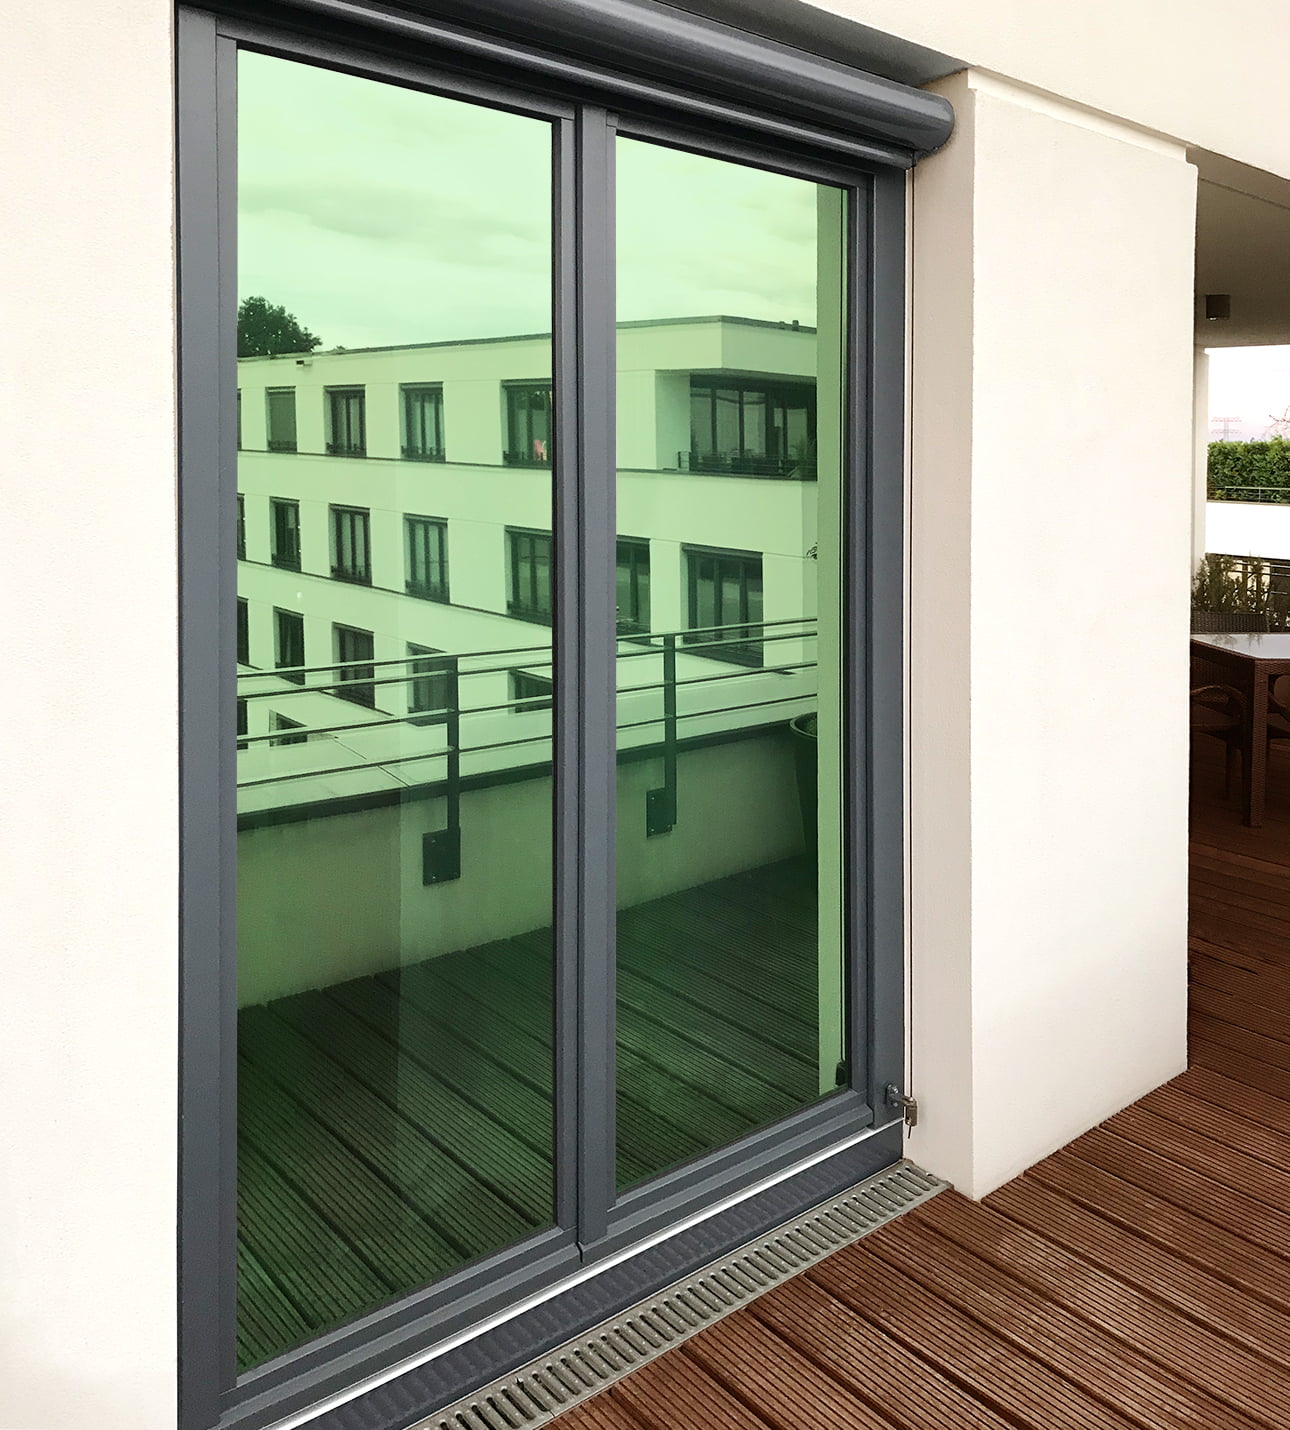 TipTopCarbon 6,57€/m² Fenster Spiegelfolie Grün Sichtschutzfolie 152cm  Breite Fensterfolie Spion Design Folie Selbstklebend